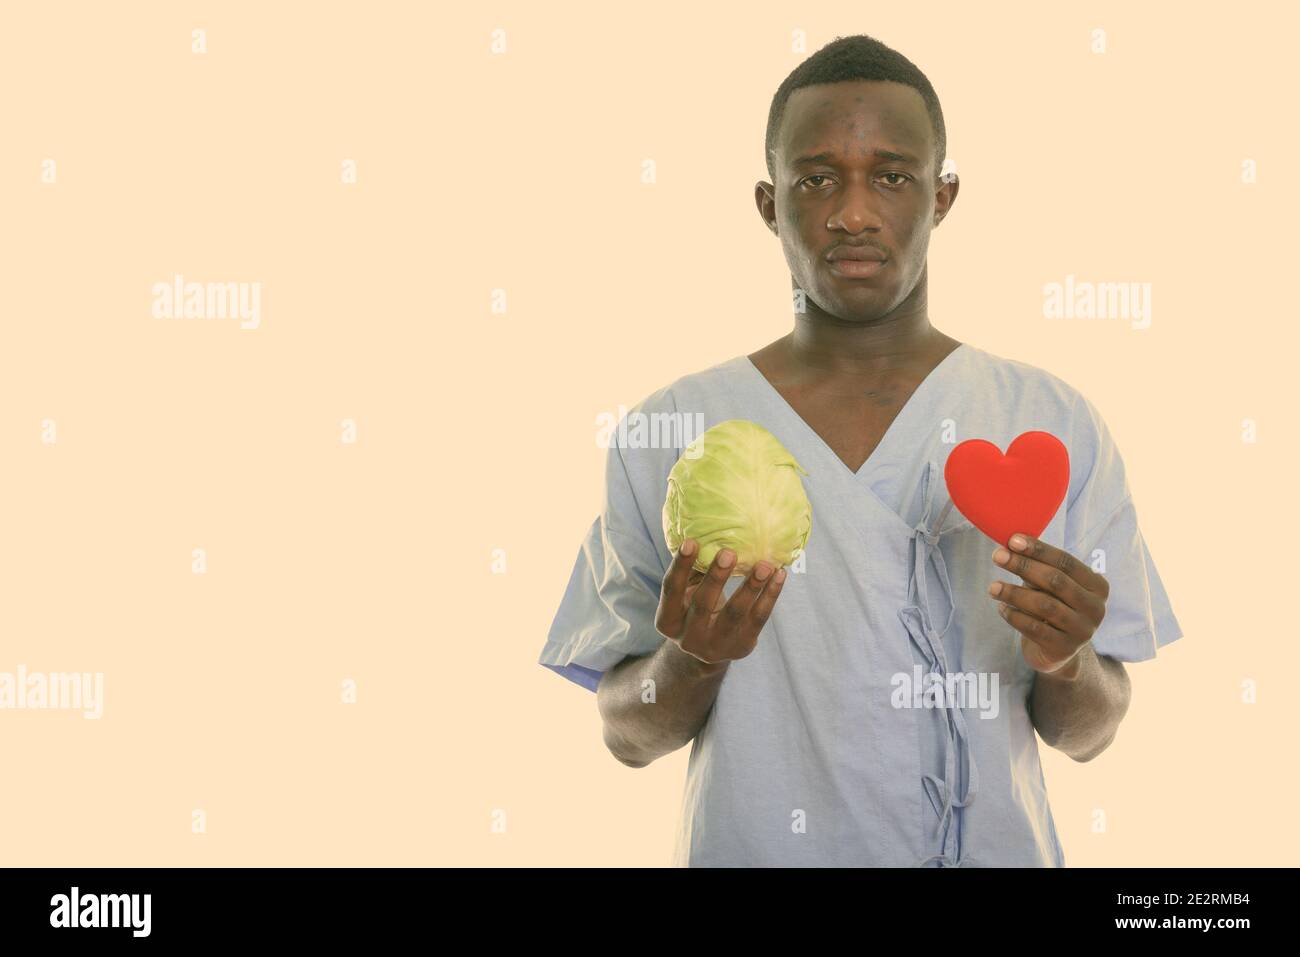 Foto de estudio de la joven paciente hombre negro africano la celebración de repollo verde y rojo corazón Foto de stock